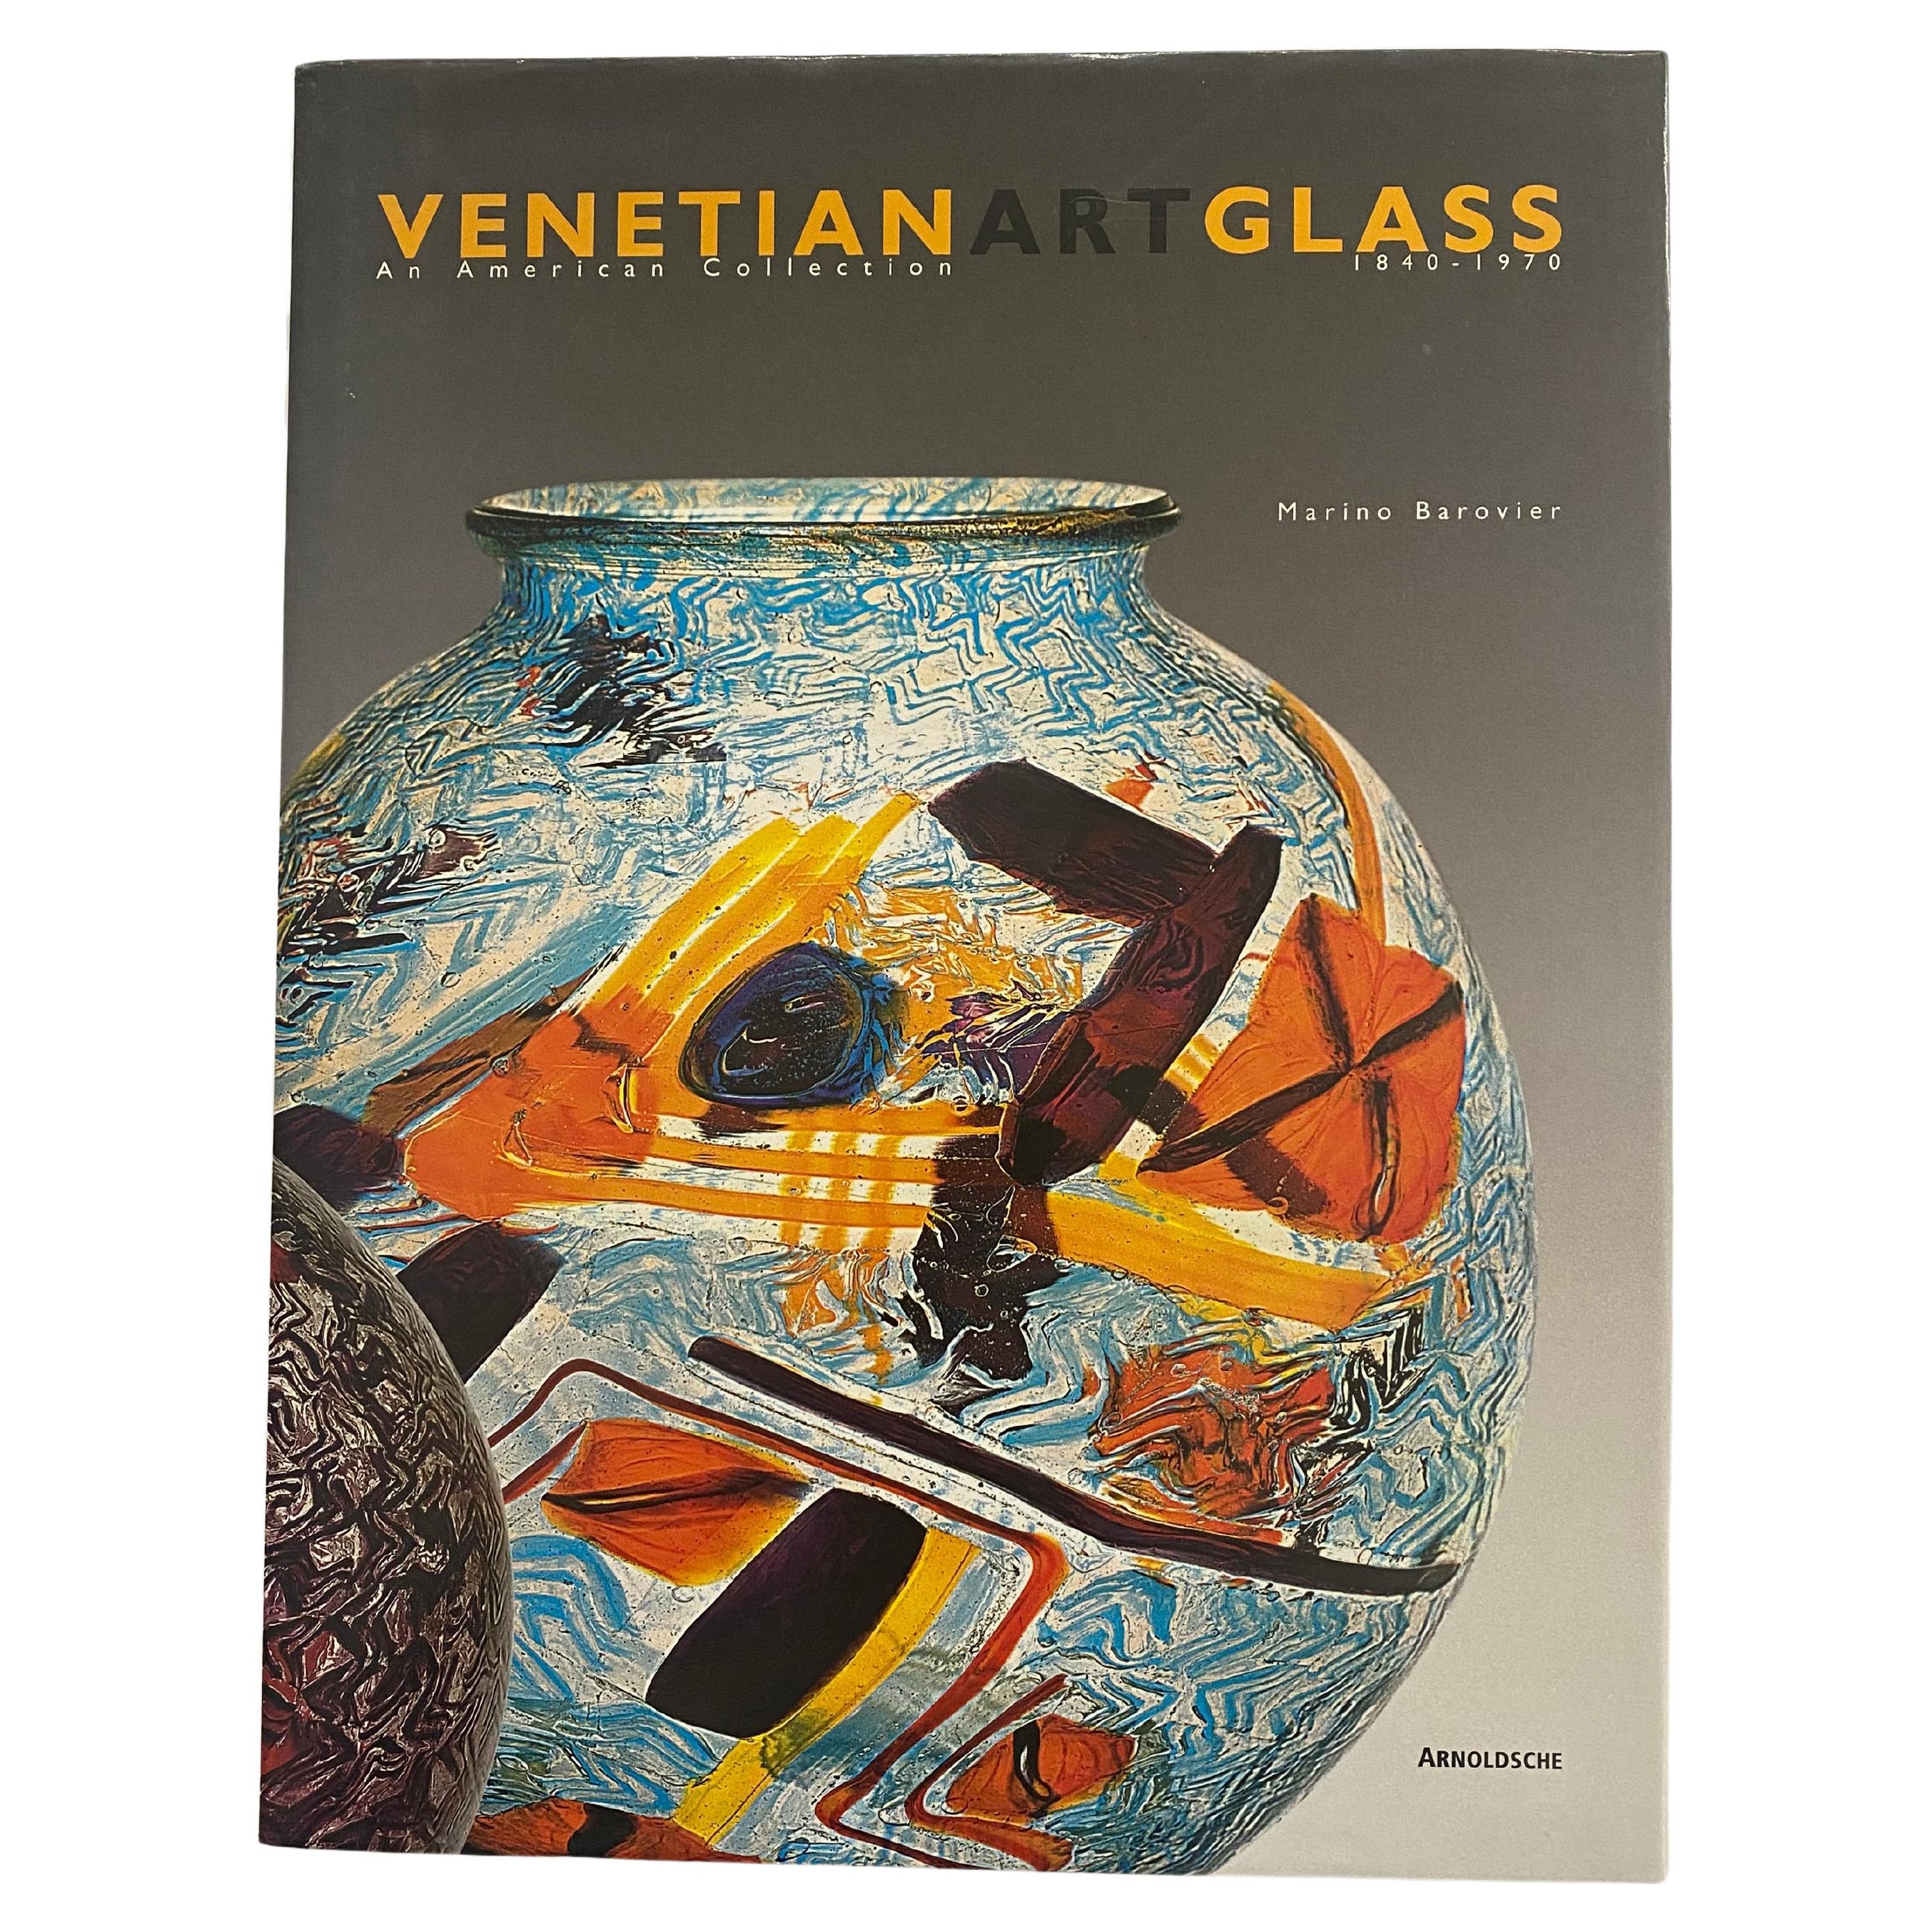 Verre d'art vénitien : une collection américaine 1840- 1970 de Marino Barovier (livre)